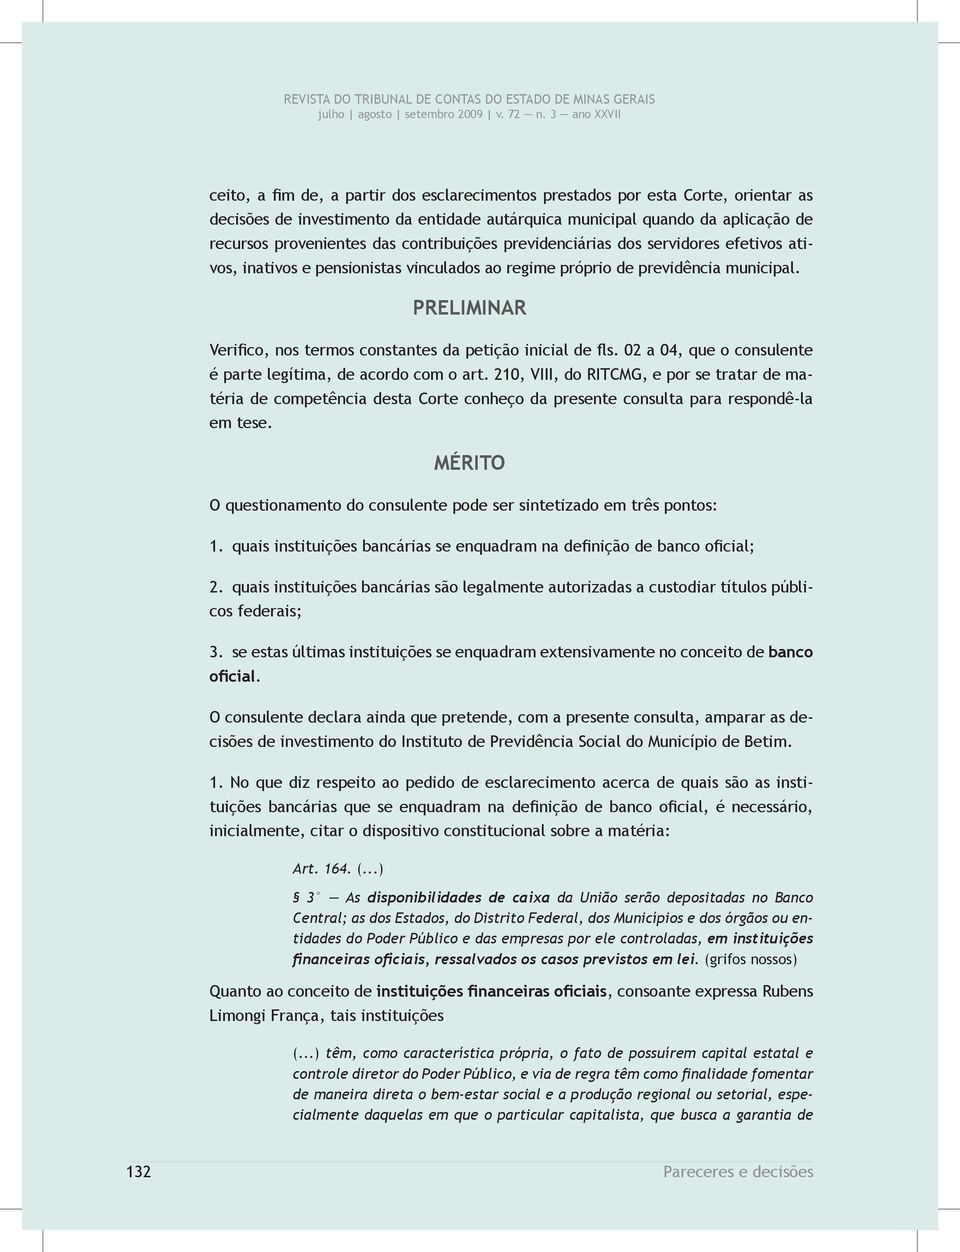 PRELIMINAR Verifico, nos termos constantes da petição inicial de fls. 02 a 04, que o consulente é parte legítima, de acordo com o art.